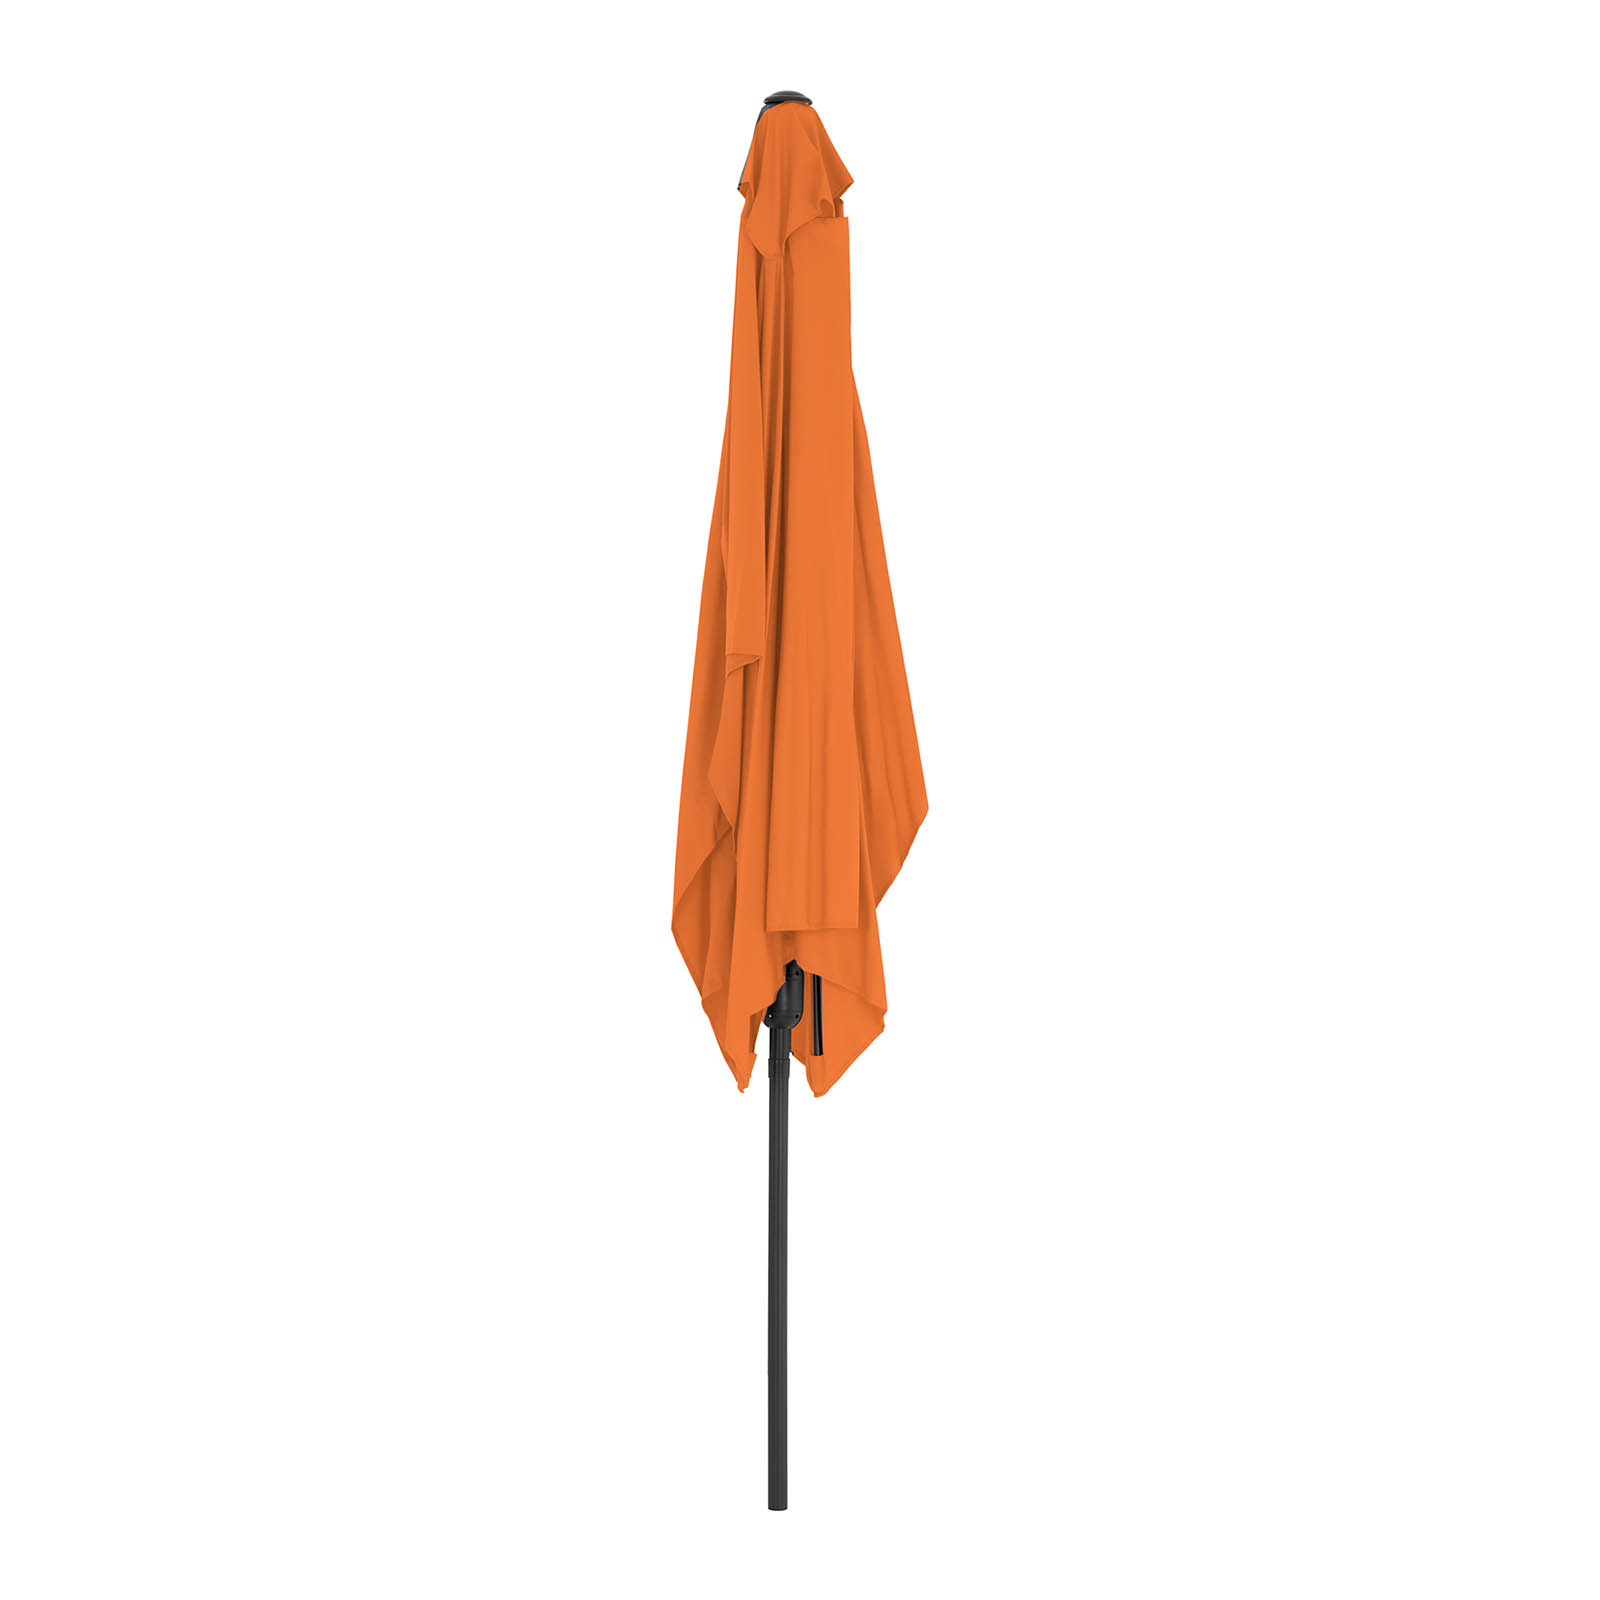 Sonnenschirm groß - orange - rechteckig - 200 x 300 cm